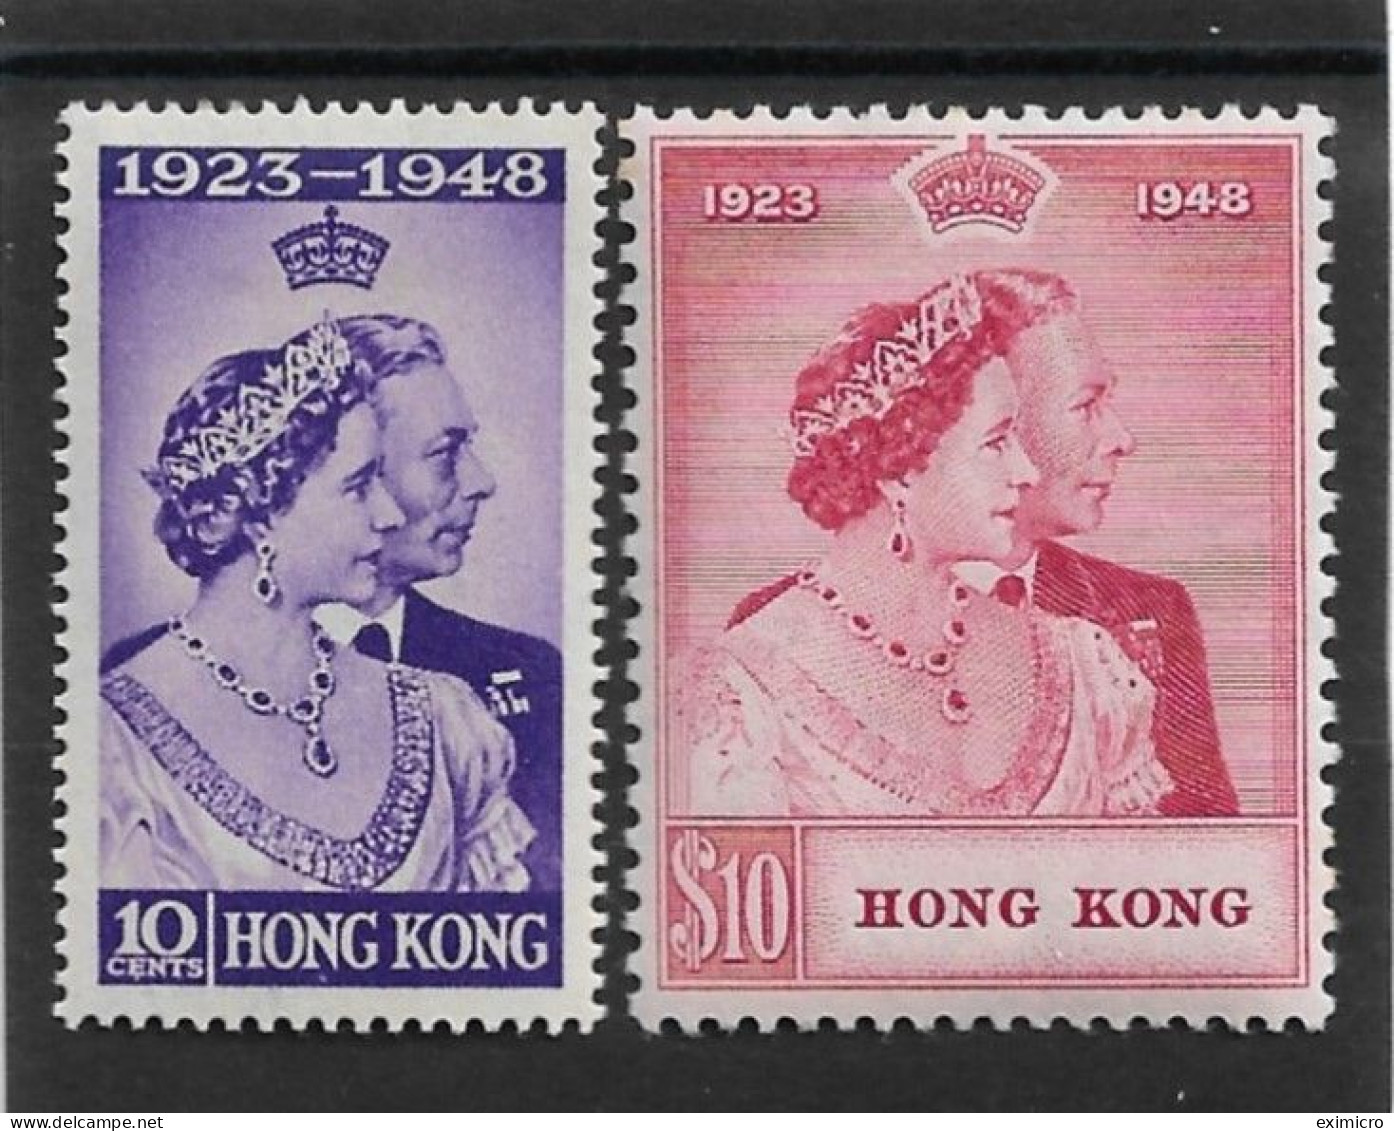 HONG KONG 1948 SILVER WEDDING SET LIGHTLY MOUNTED MINT Cat £278+ - Ongebruikt